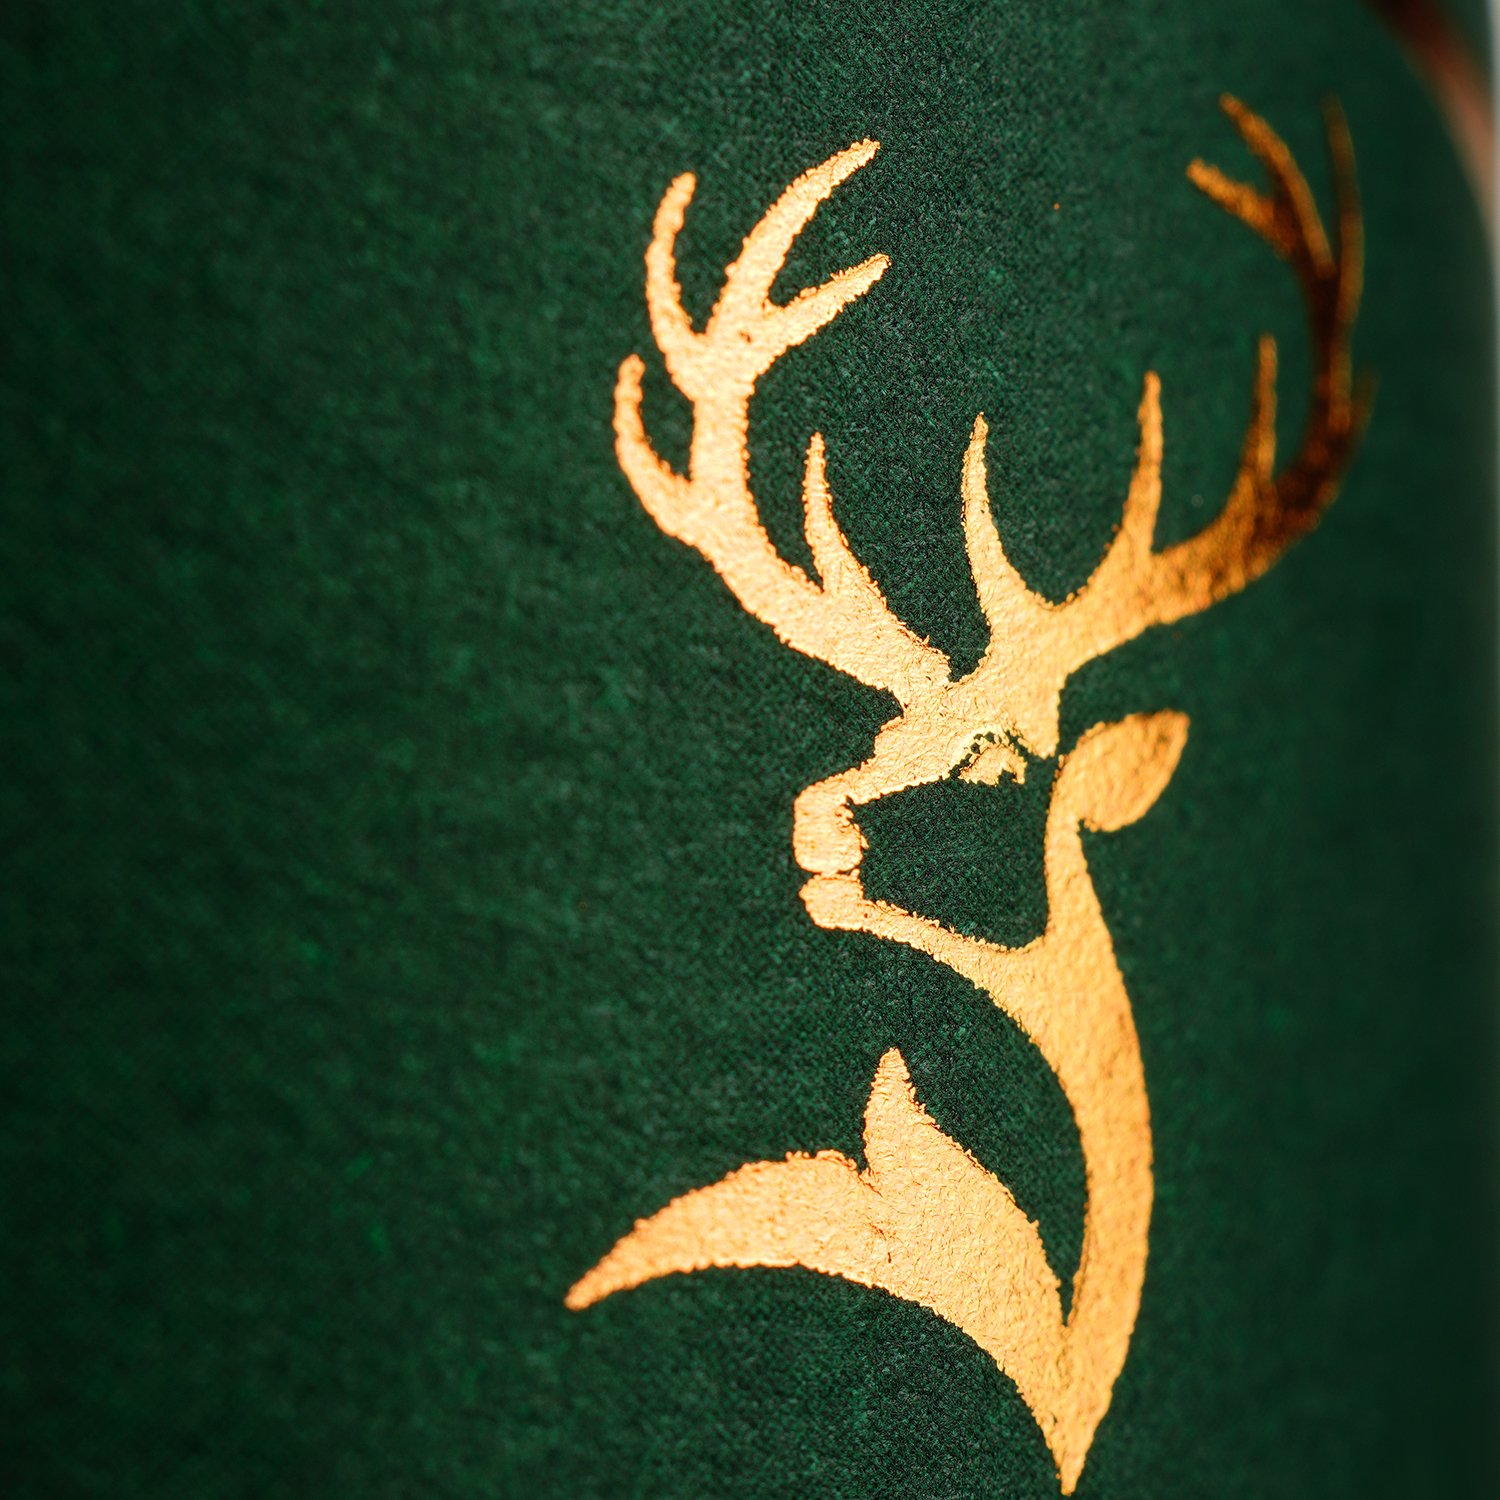 Виски Glenfiddich Single Malt Scotch, 12 yo, в подарочной упаковке, 40%, 0,5 л (91149) - фото 5